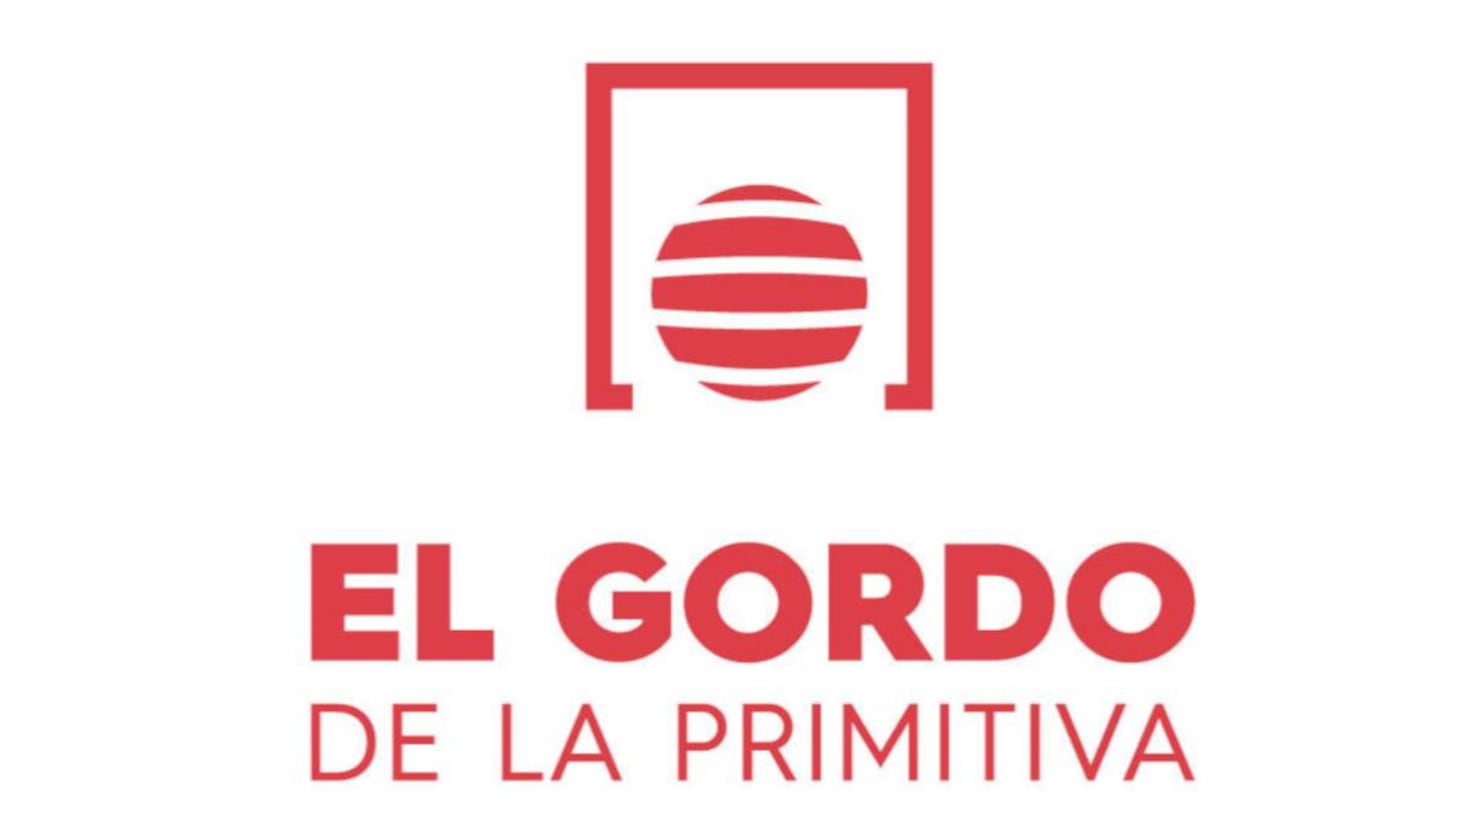 Gordo de la Primitiva: check the results of today's draw, Sunday, May 5
